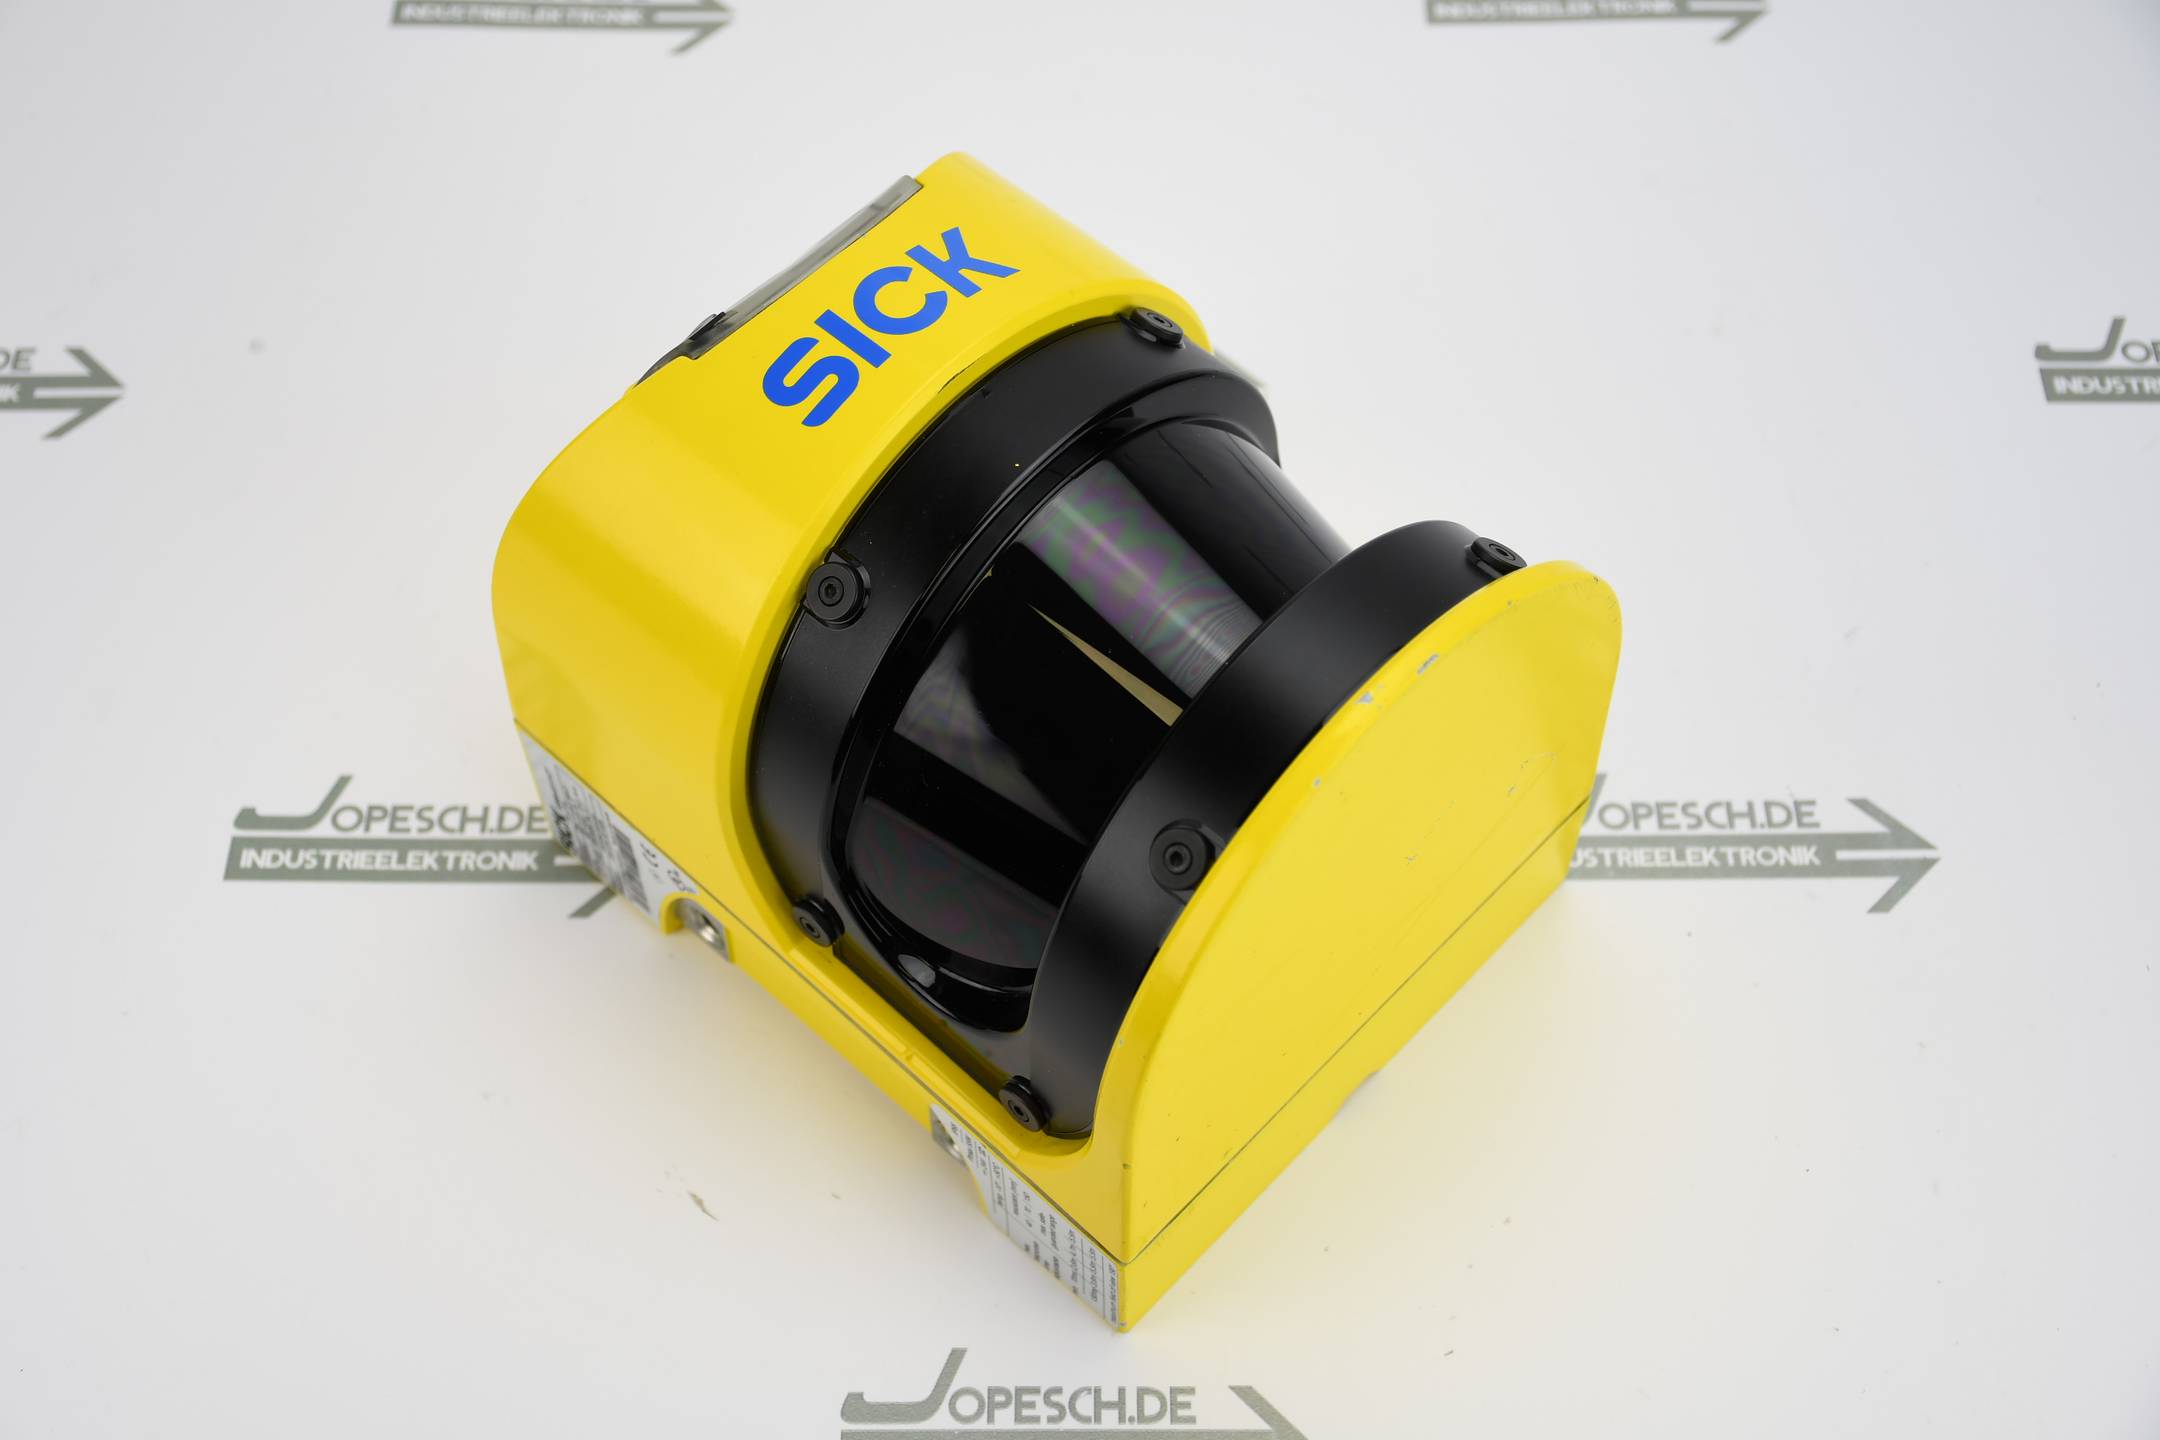 SICK Sicherheits-Laserscanner S3000 PROFINET IO S30A-6111CP ( 1045652 )